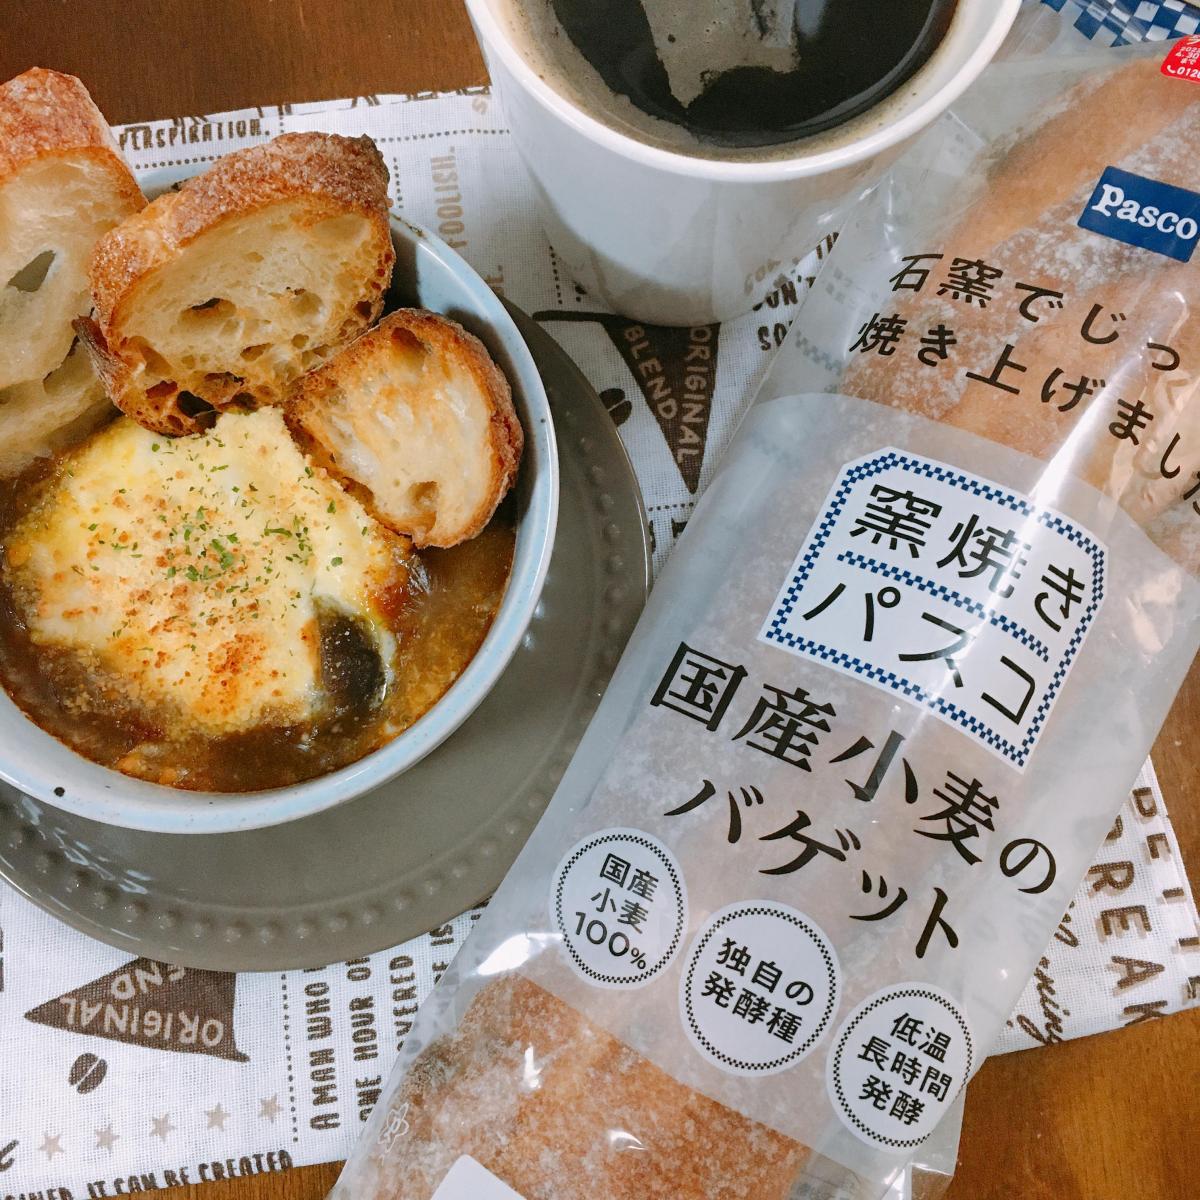 敷島製パン 窯焼きパスコ 国産小麦のバゲット（食事パン）